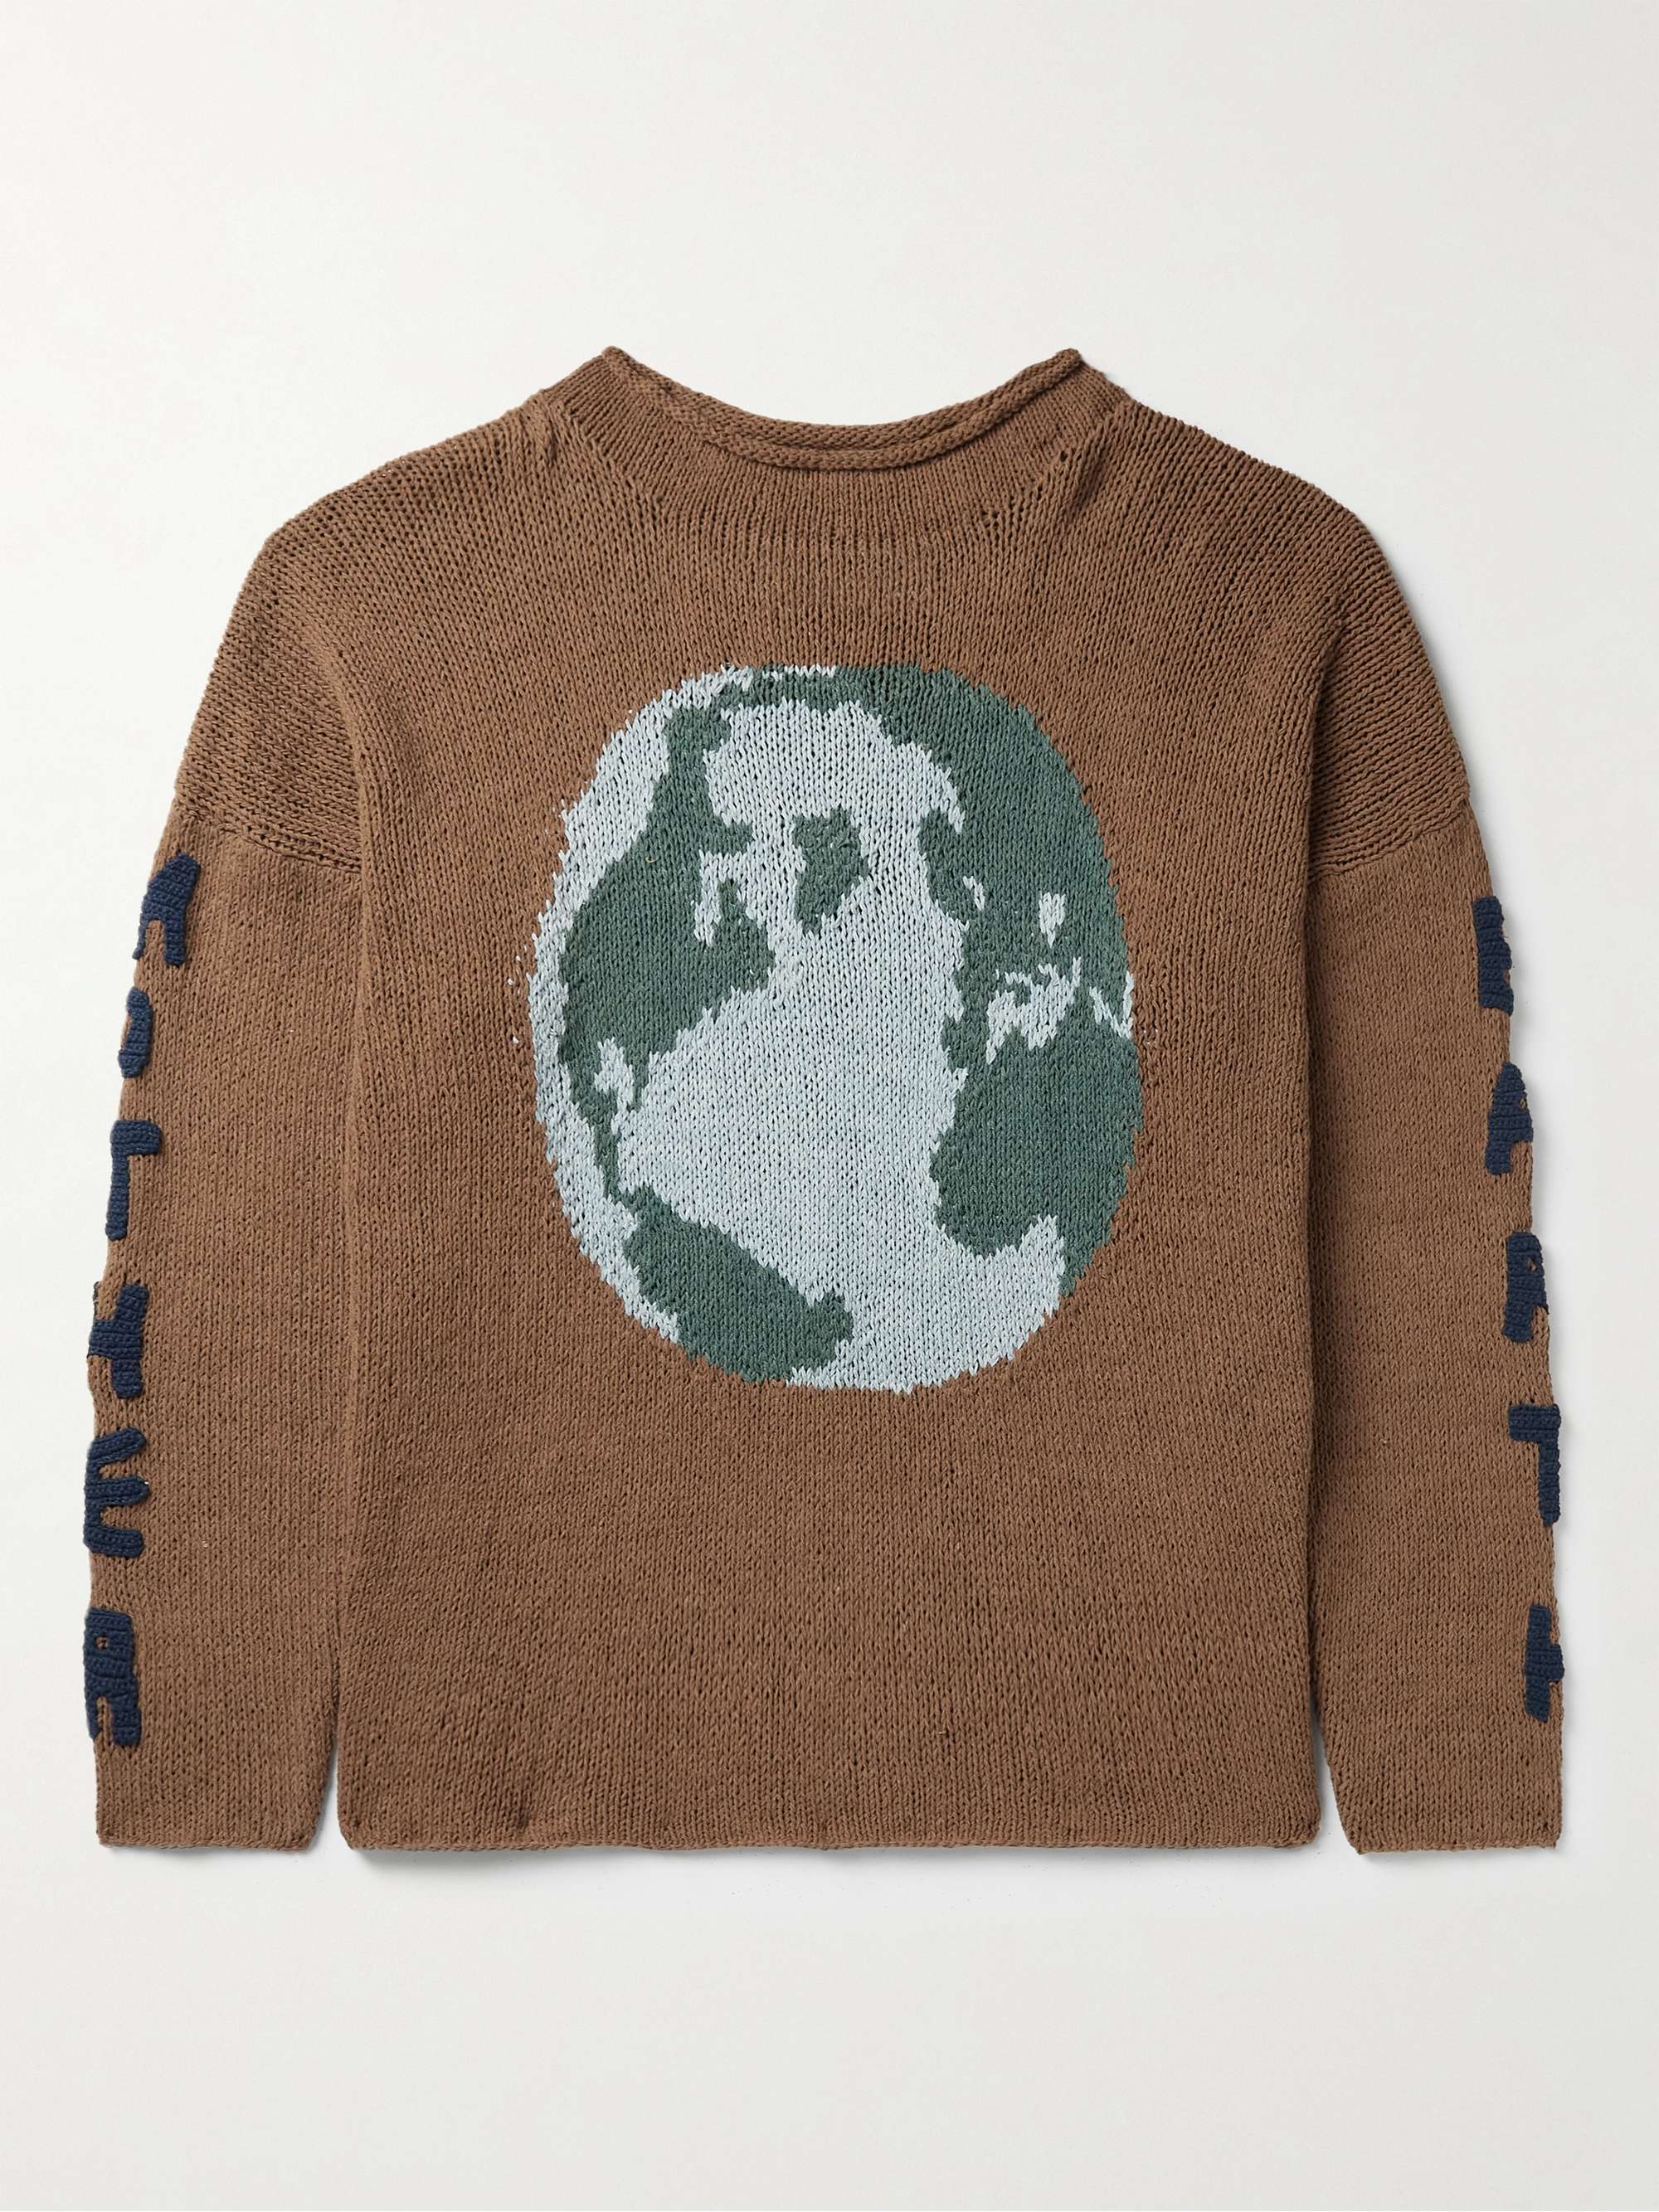 STORY MFG. Twinsun Embellished Organic Cotton Sweater